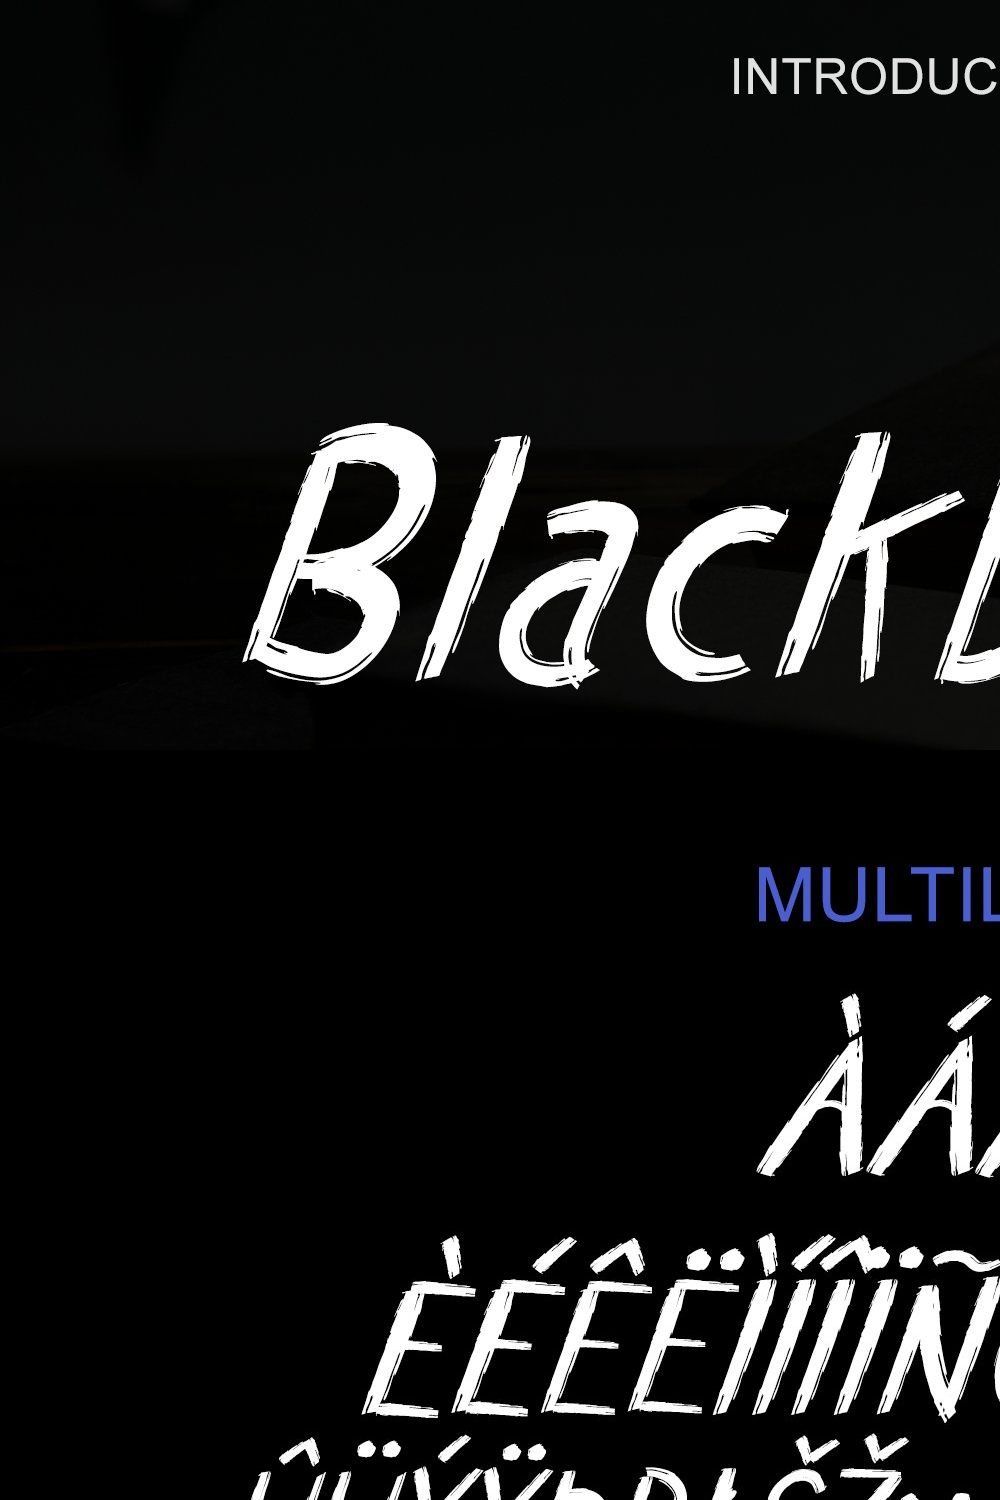 Blackbook - Brush font pinterest preview image.